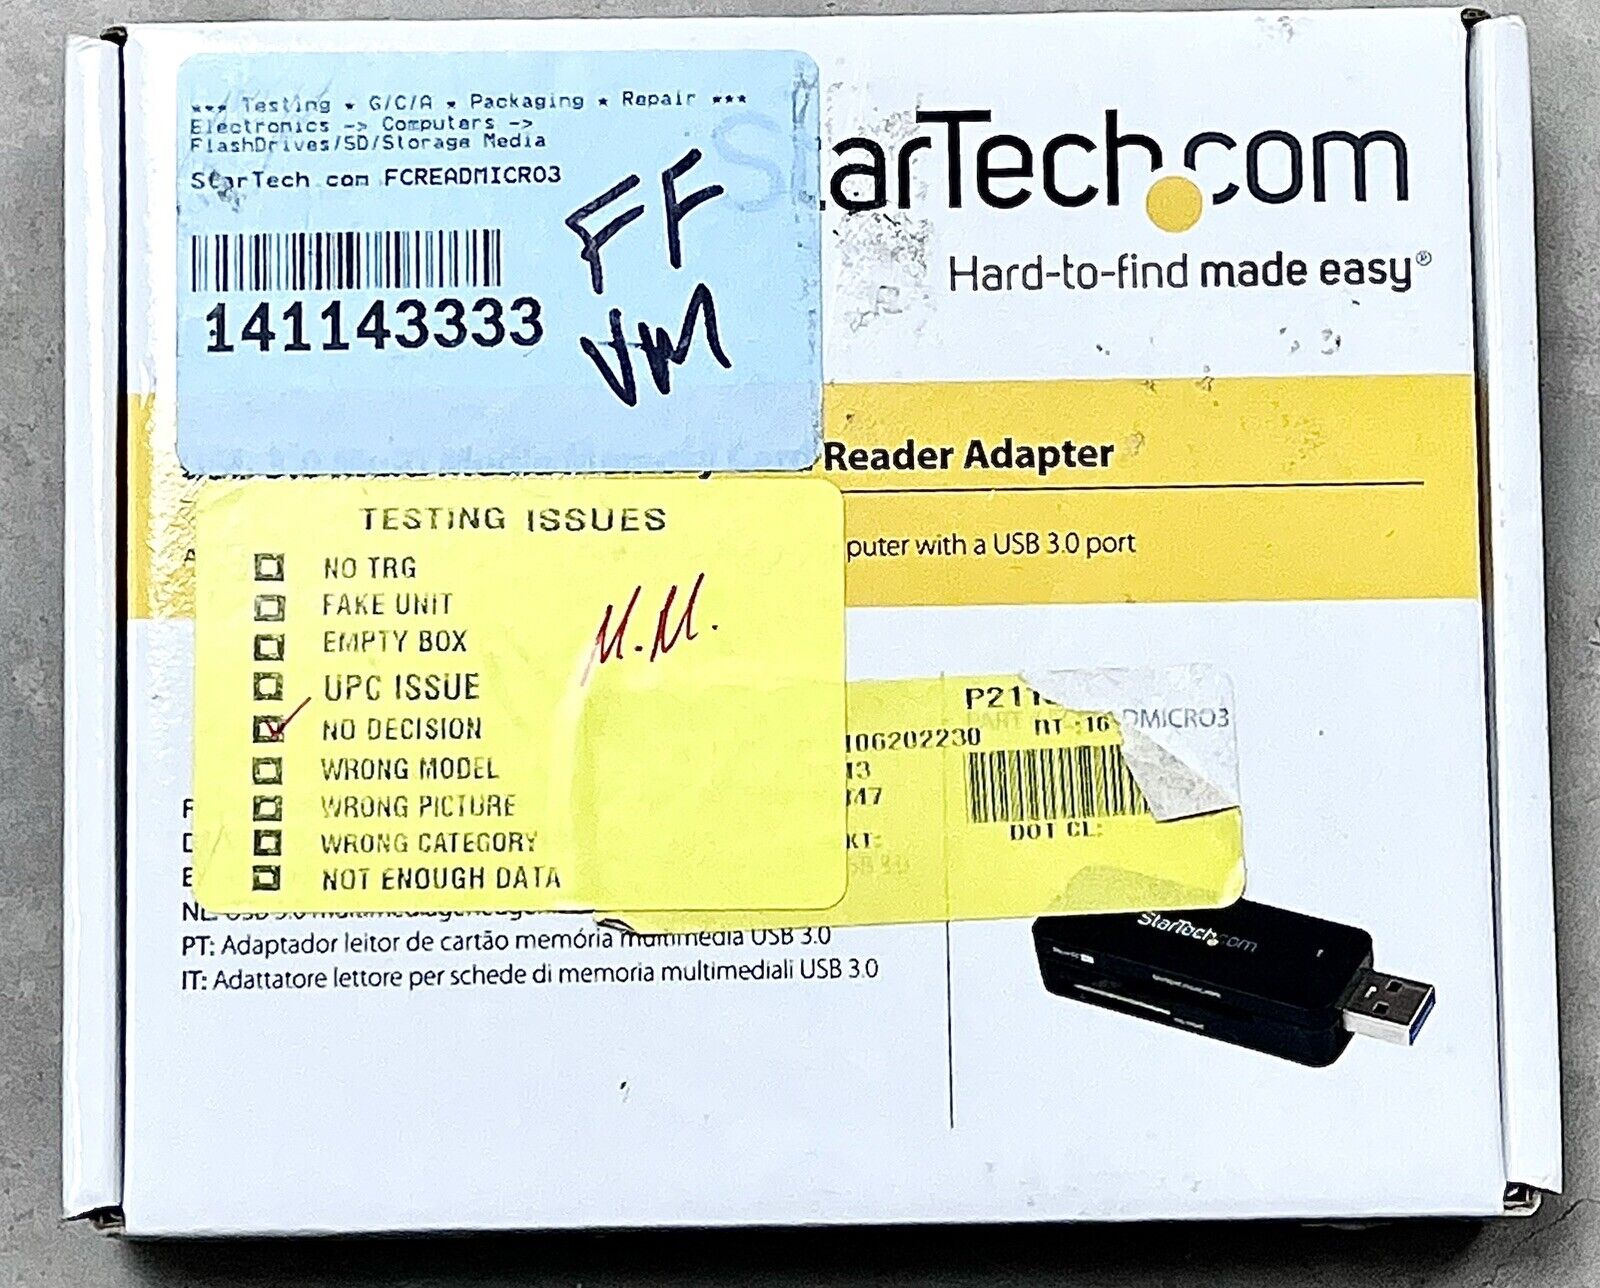 Star Tech.com USB 3.0 External Flash Multi Media Memory Card Reader - SDHC